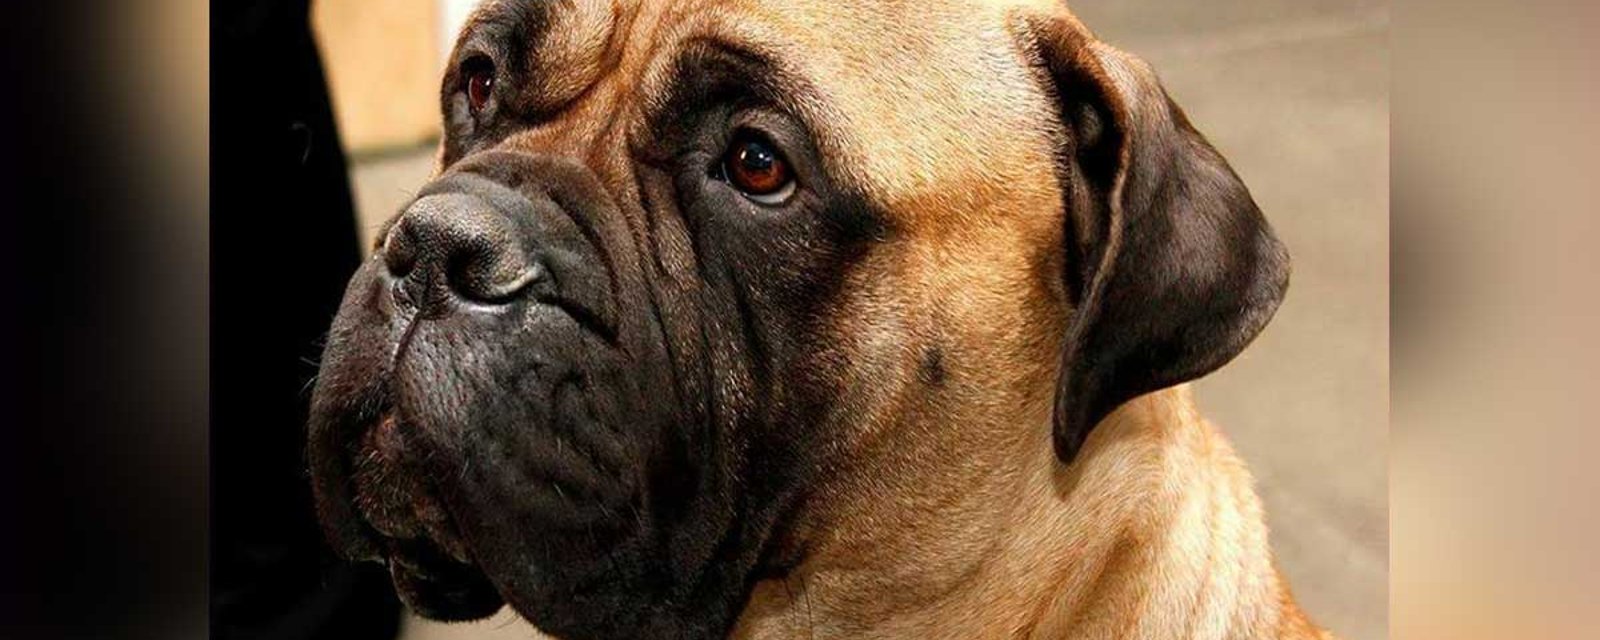 Le chien d'un célèbre animateur québécois battu à mort...